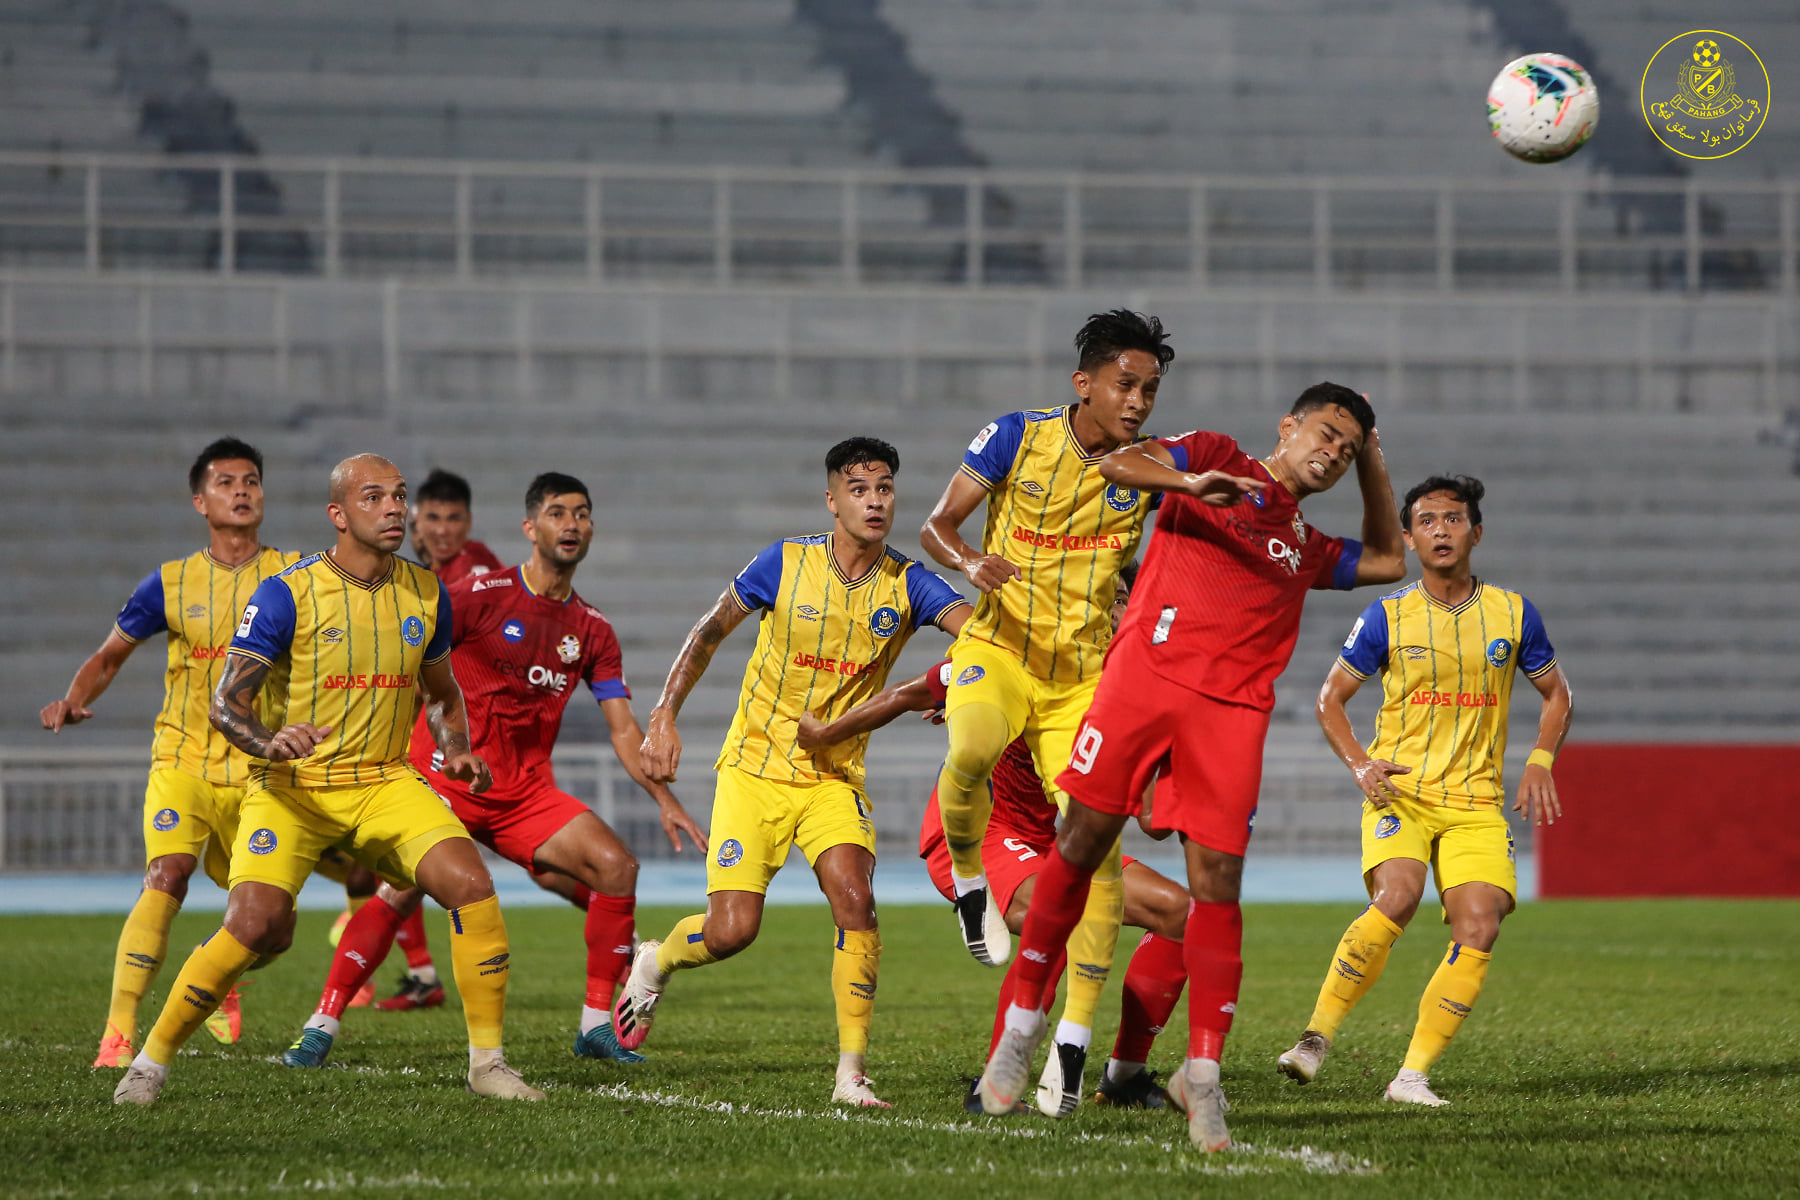 Akibat Kebijakan Pemerintah, Kompetisi Sepak Bola Malaysia Terancam Ditunda